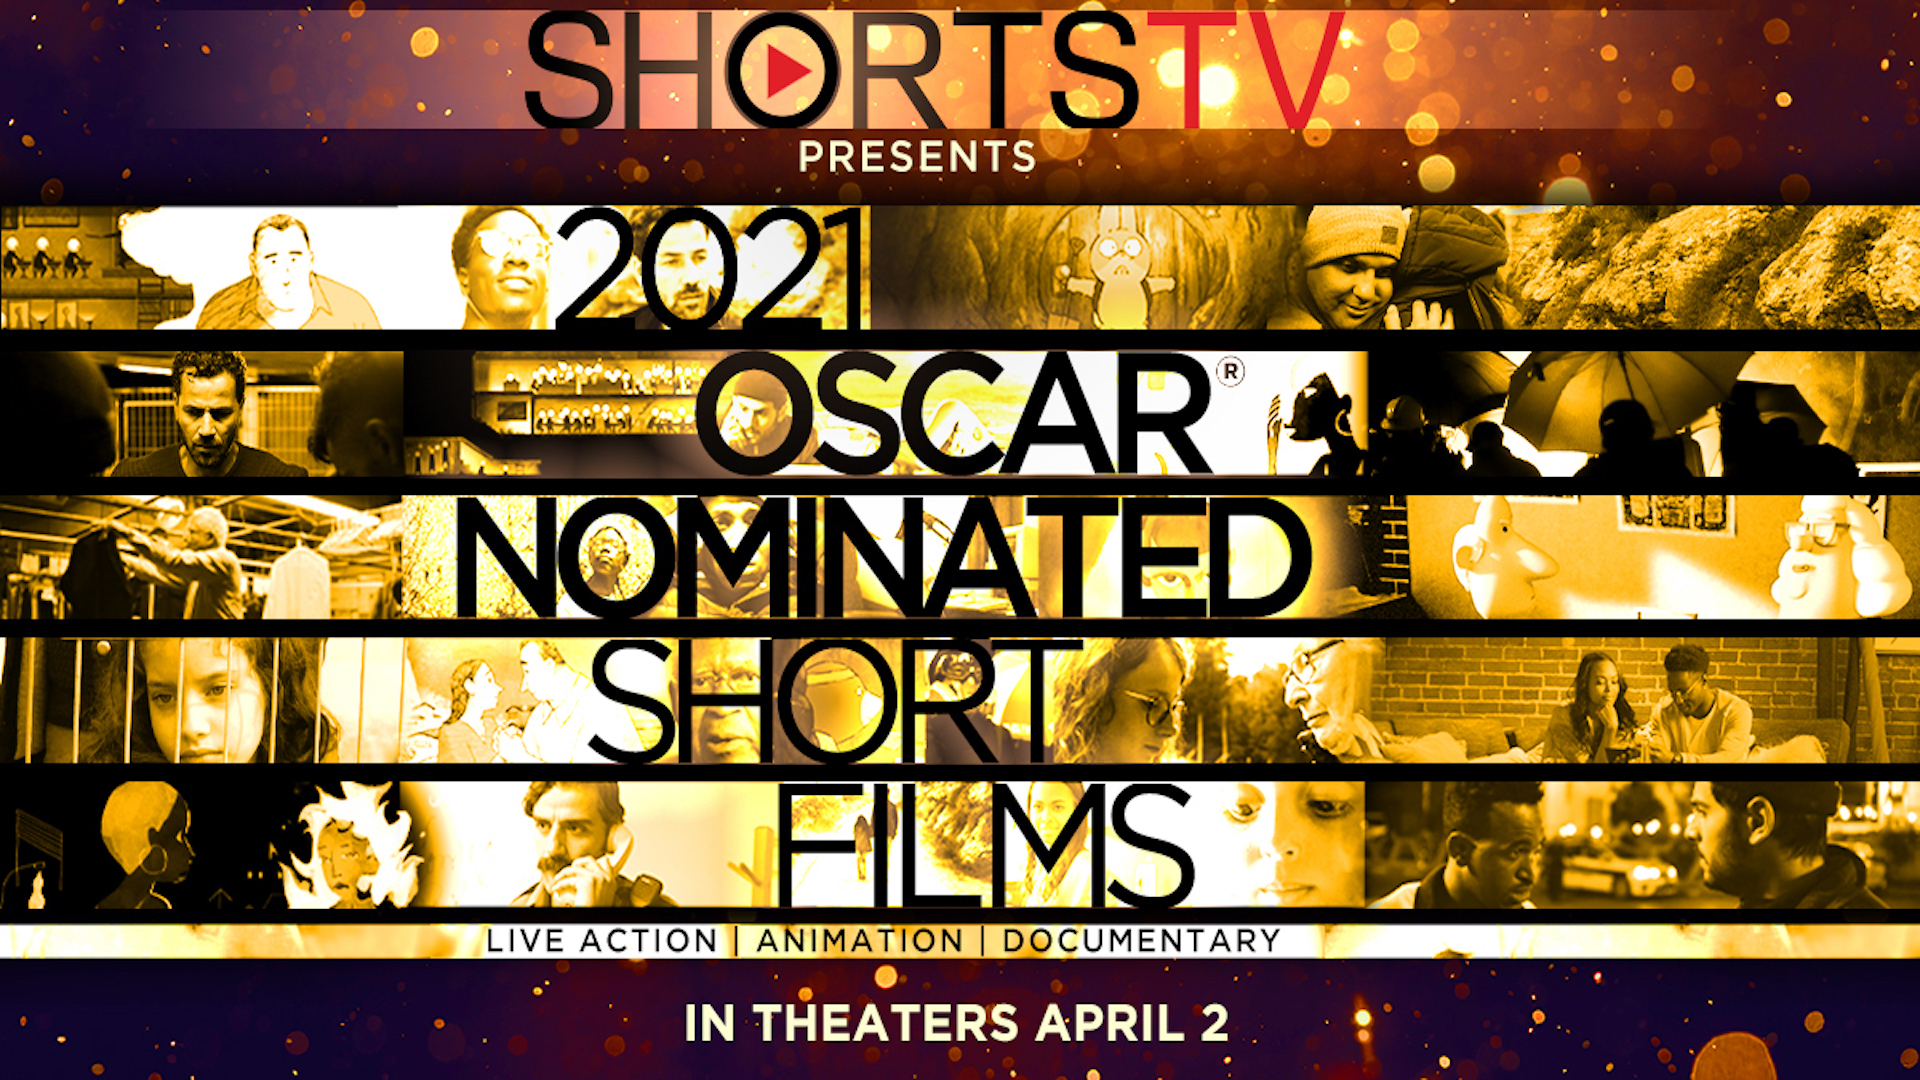 Oscar nominated Short Films program returns April 17